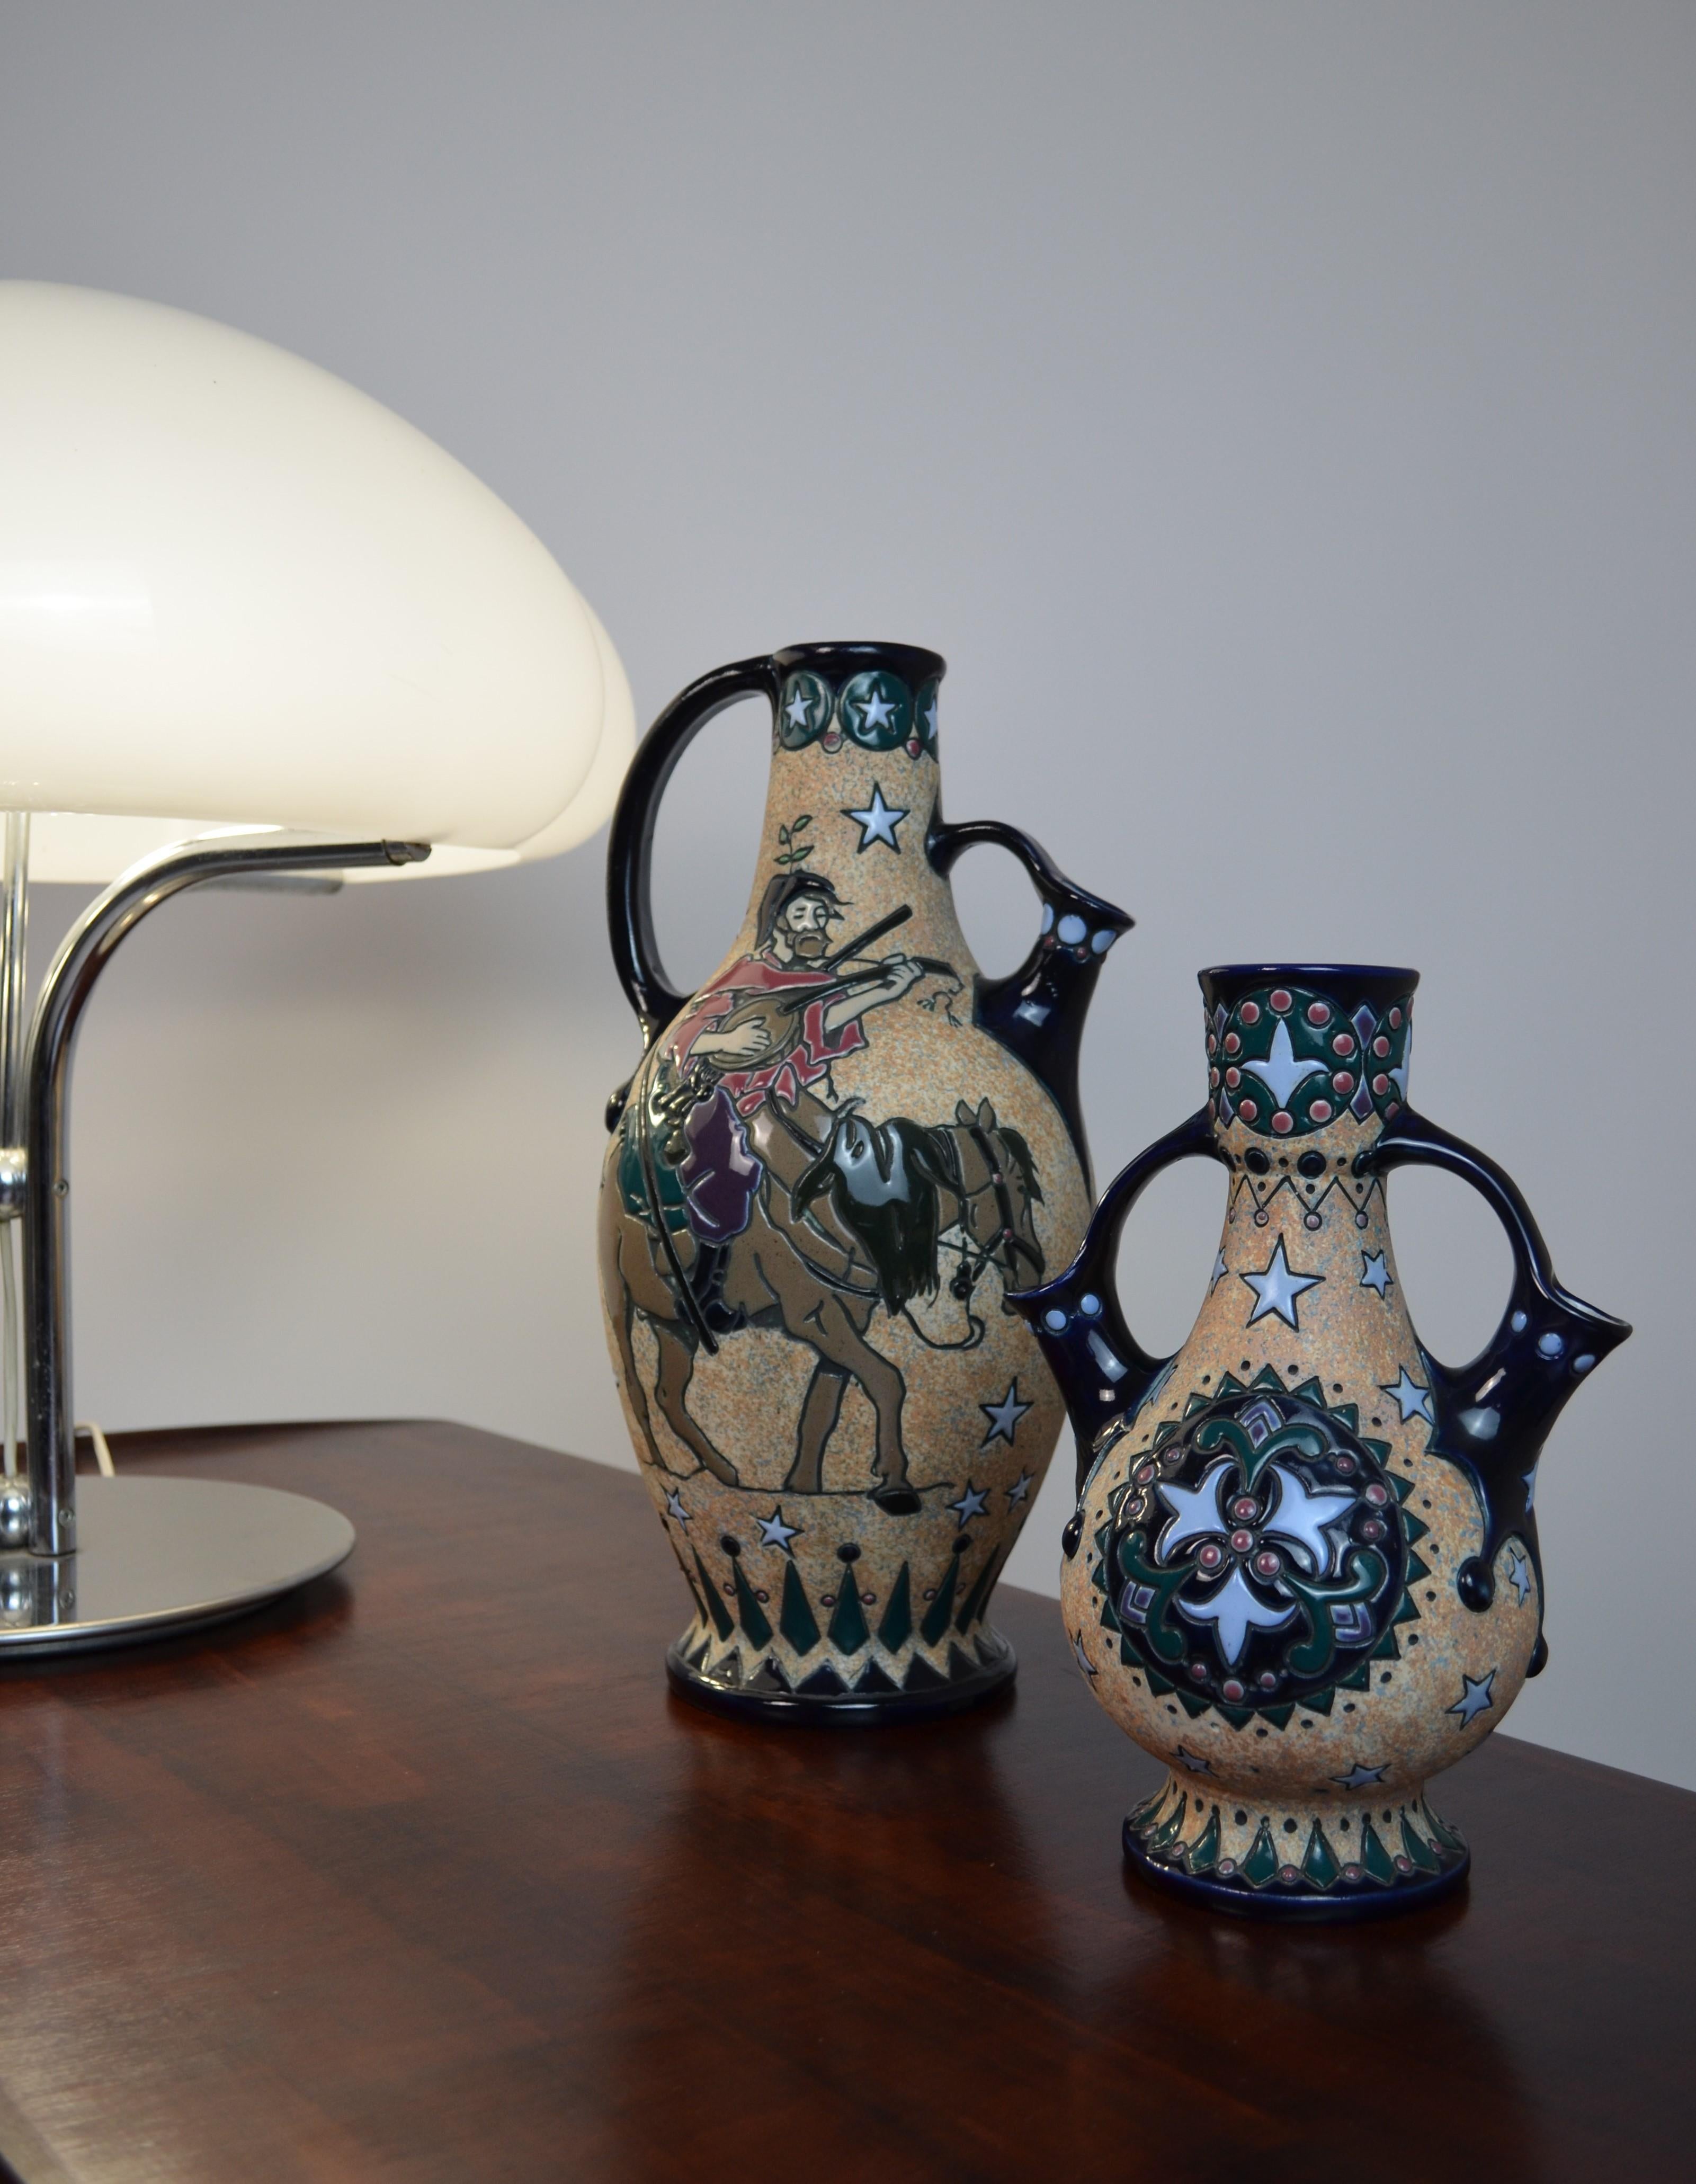 Paar tschechoslowakische glasierte Keramikvasen des Herstellers Amphora, 20er Jahre
Art déco-Stil
Selten und spektakulär
Die größte ist mit dem Herstellerkennzeichen auf der Unterseite versehen
Höhe: 37 und 25 cm
Durchmesser: 16 und 13 cm